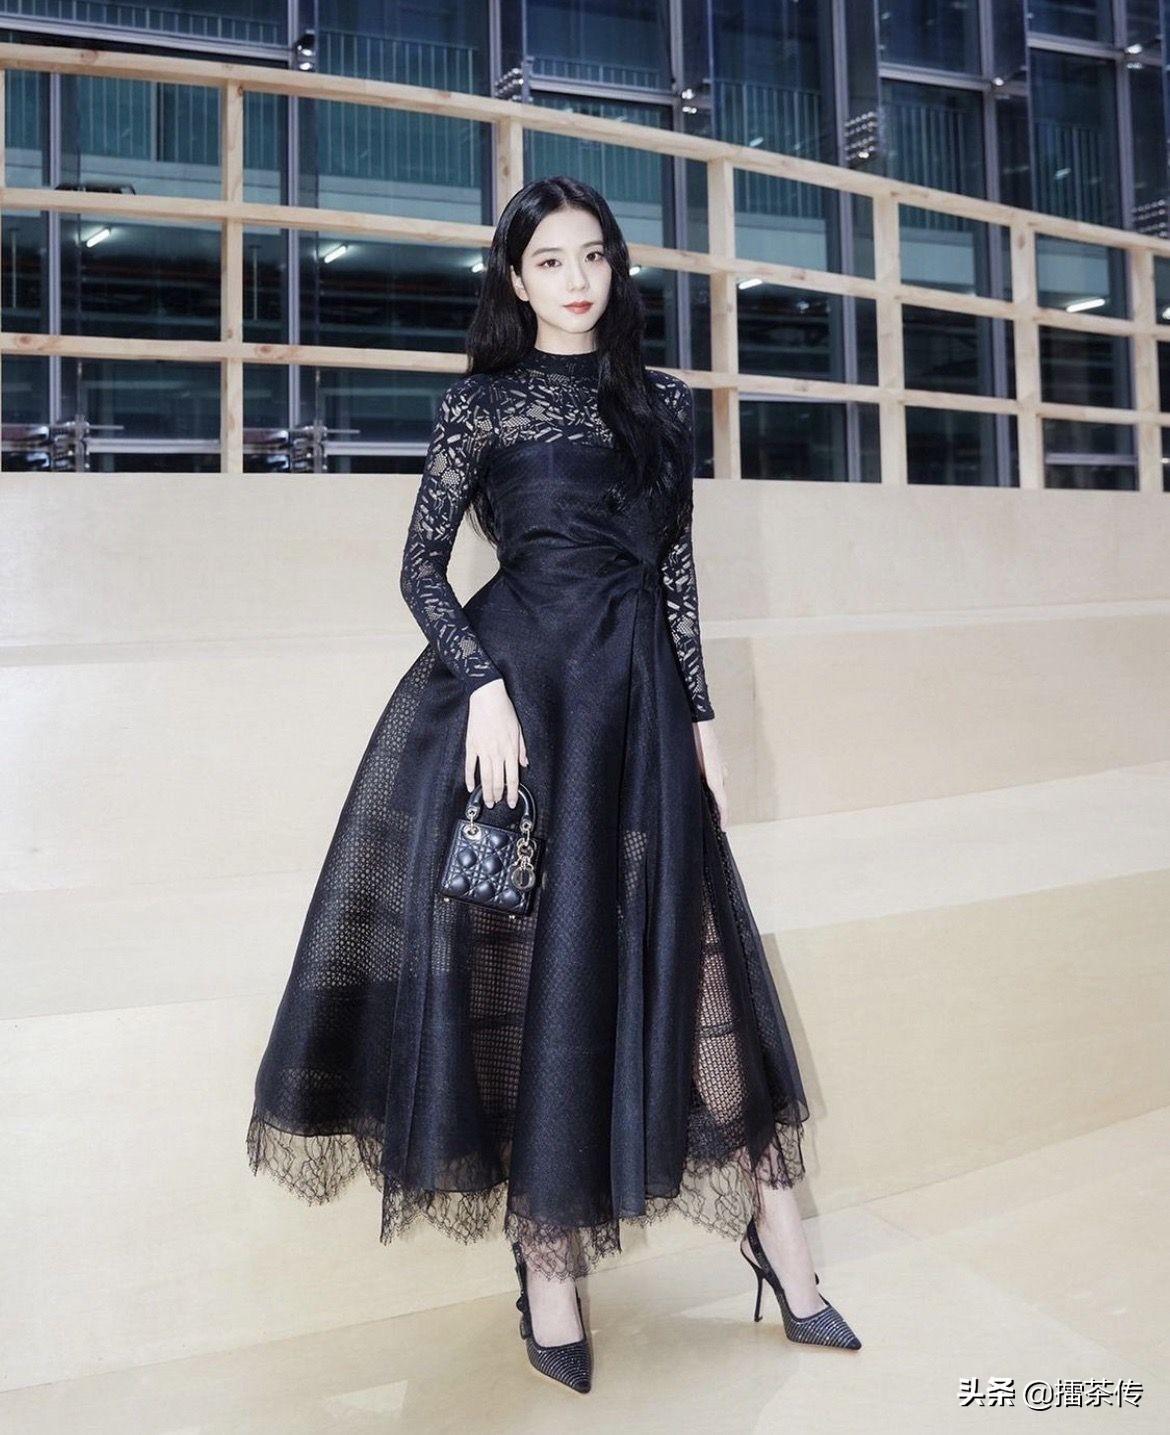 当晚jisoo穿上了2022秋冬系列的黑色蕾丝礼服,古典高雅气质油然而生